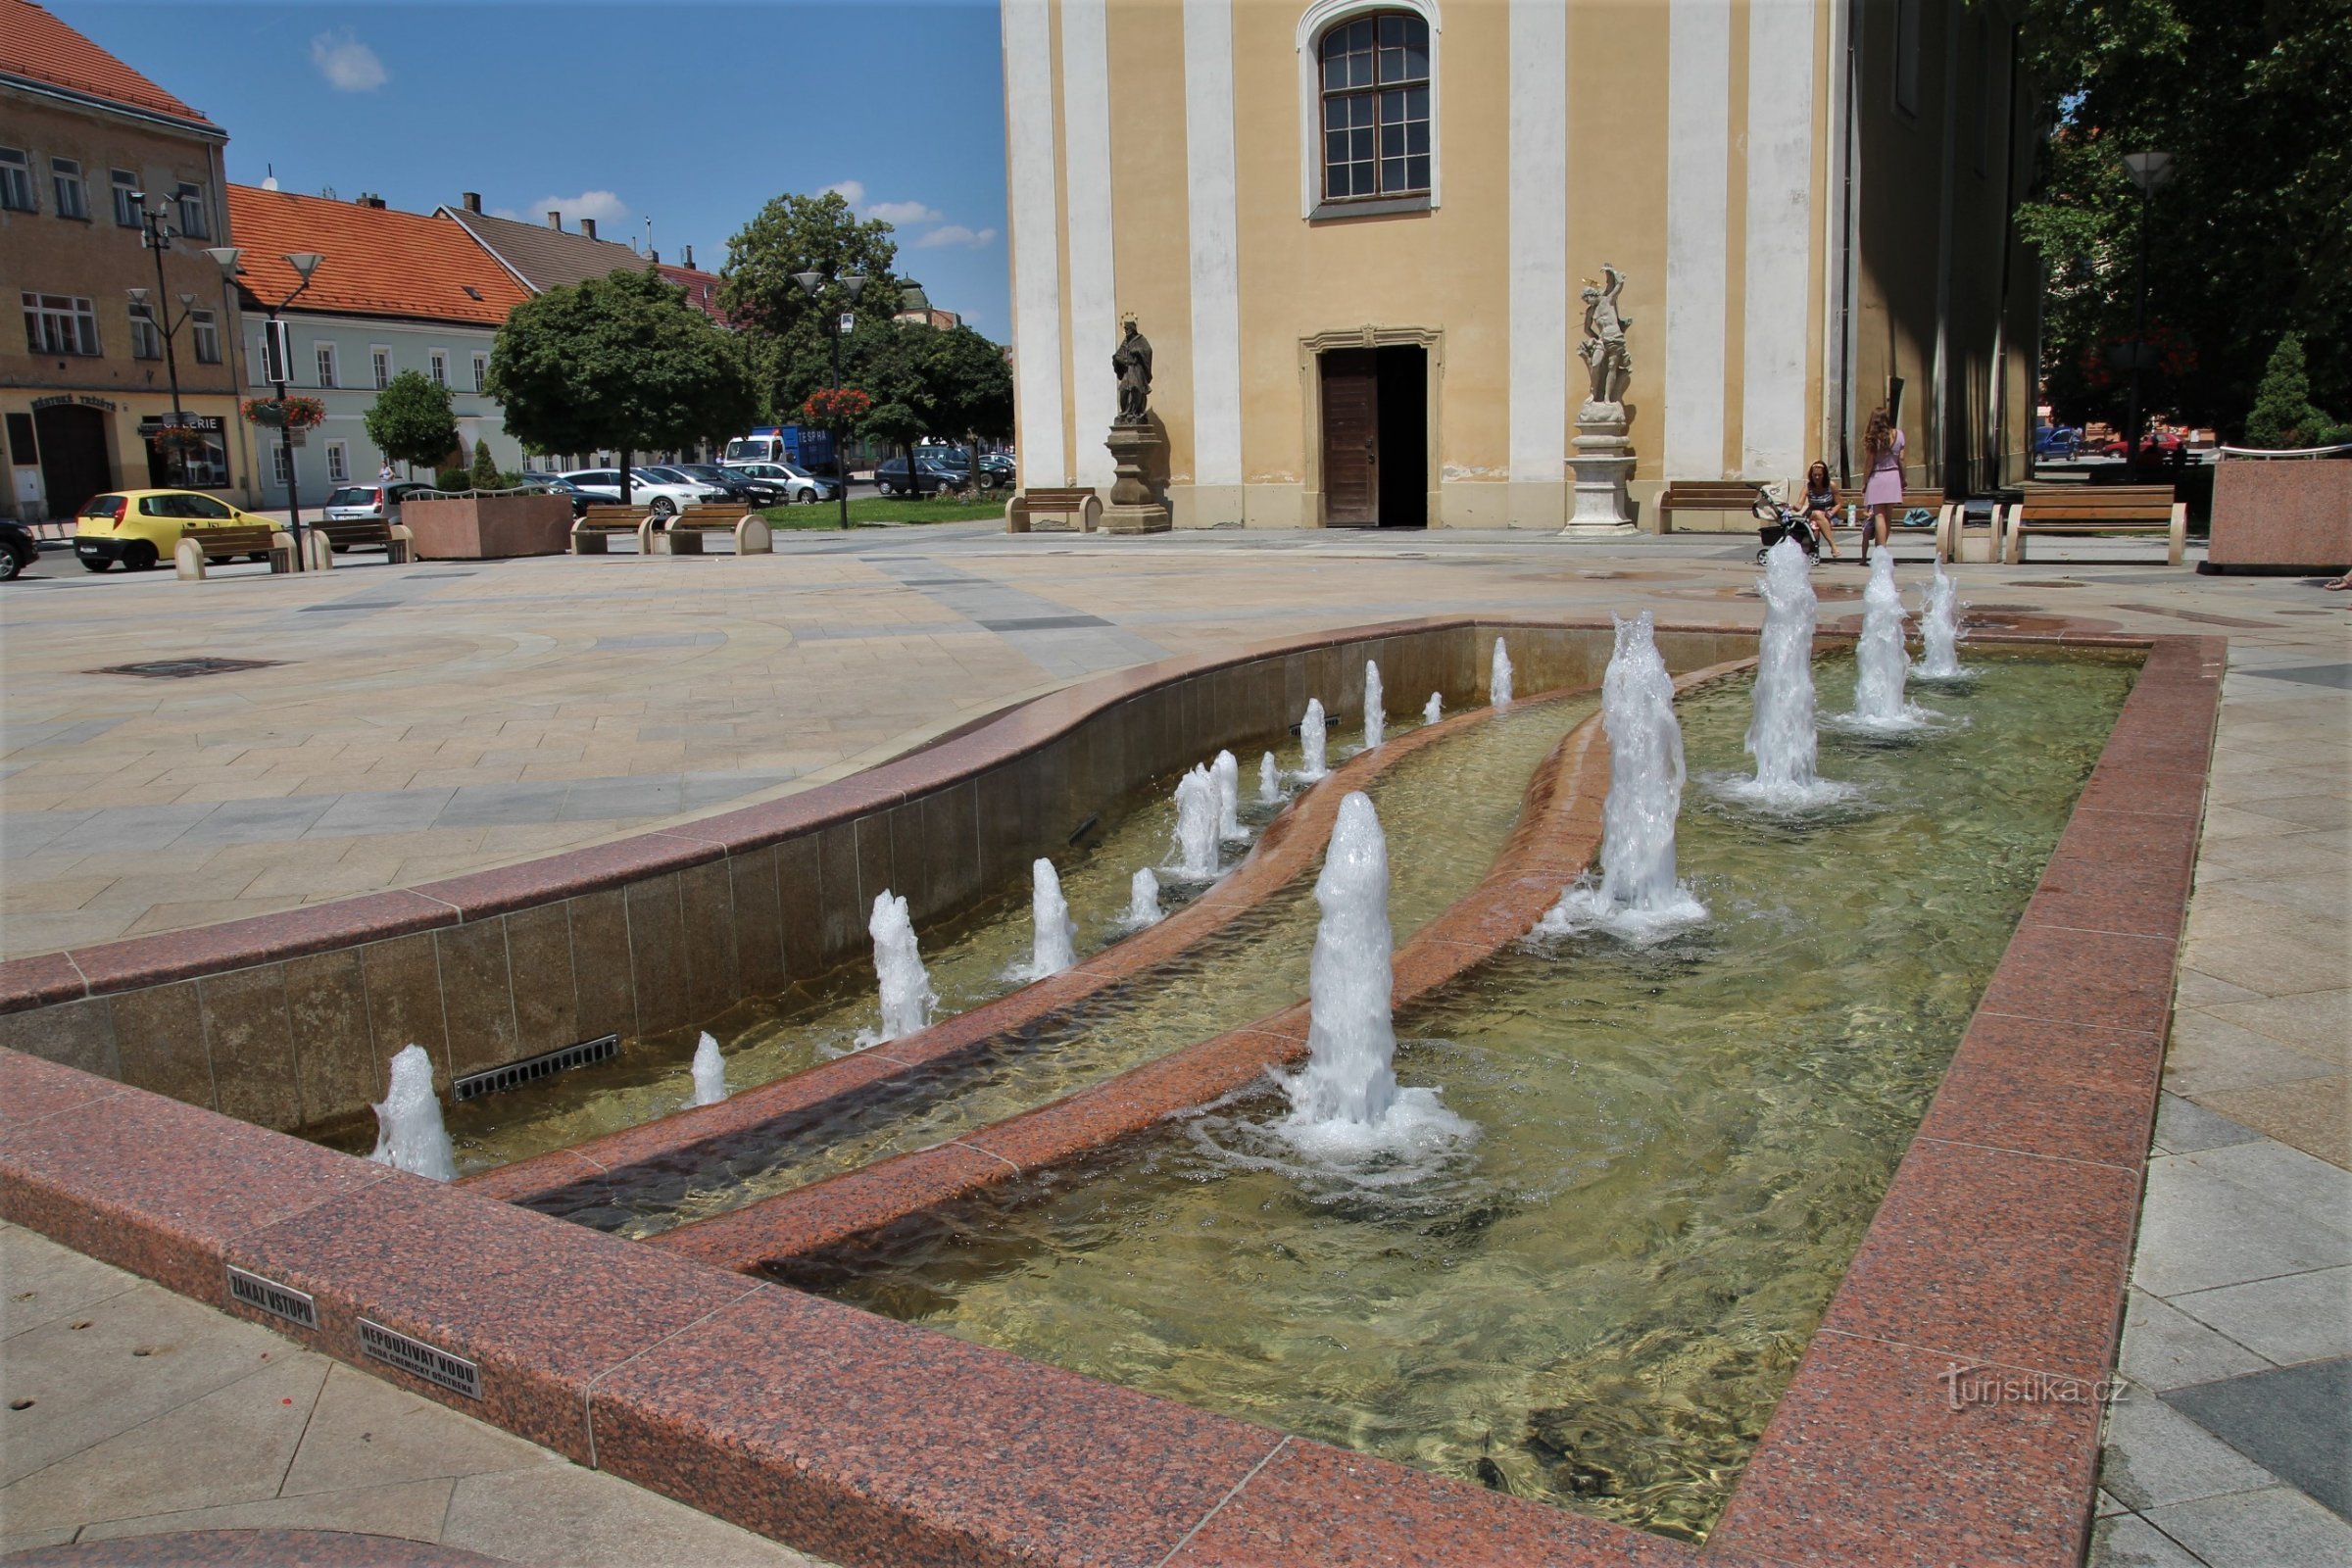 Поющий фонтан находится возле церкви св. Лоуренс